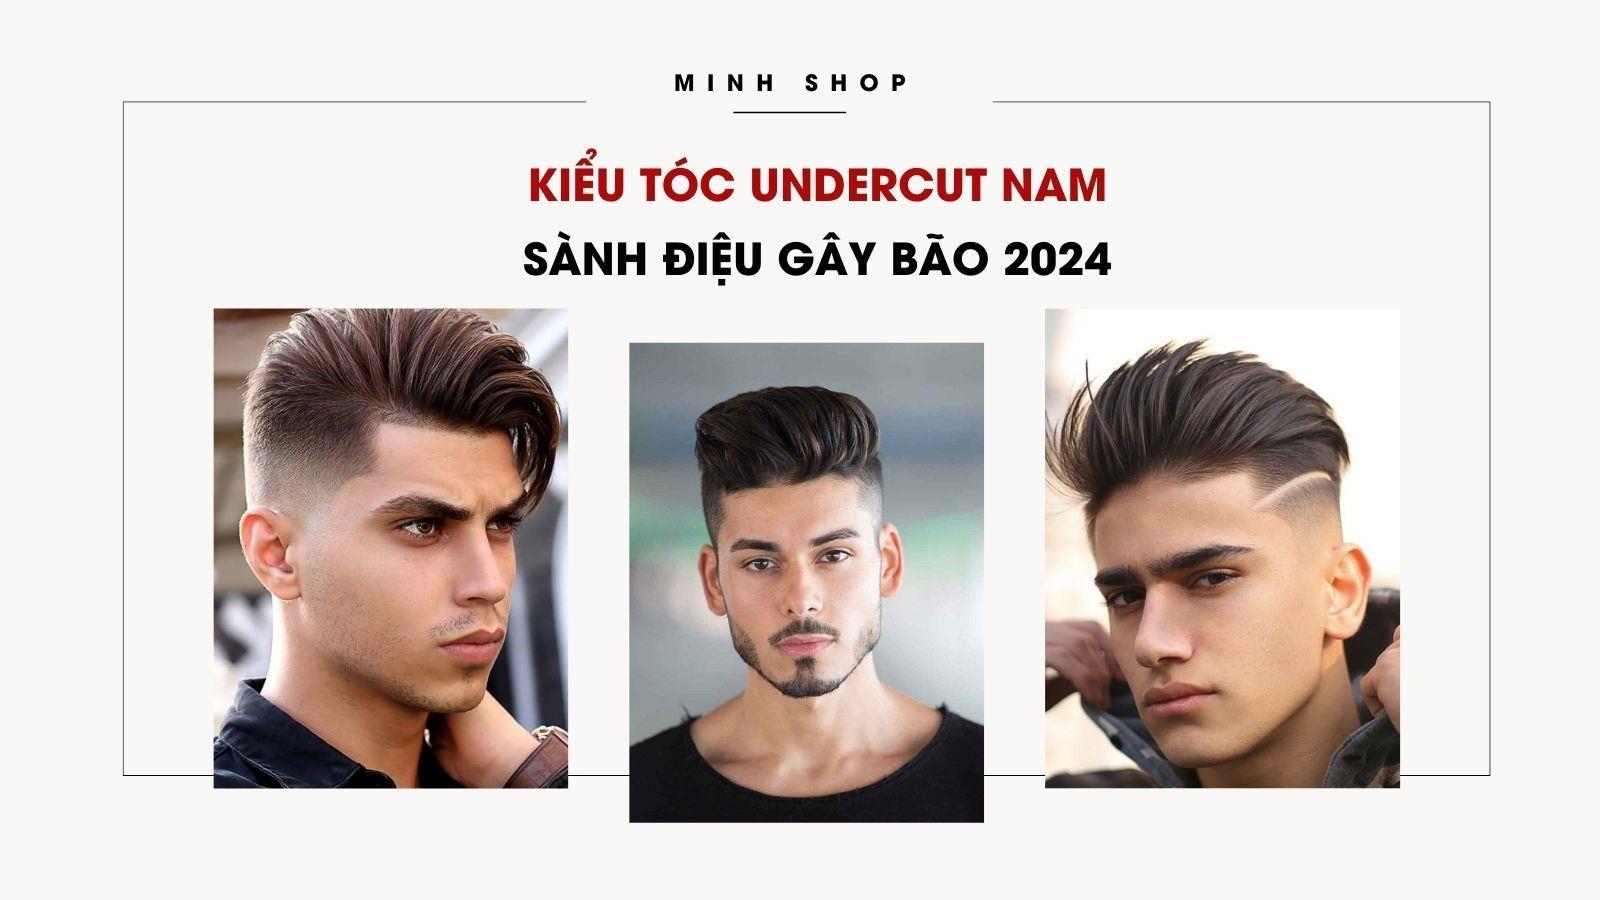 Kiểu tóc Undercut Việt Nam – Kiểu tóc đẹp không bao giờ lỗi thời